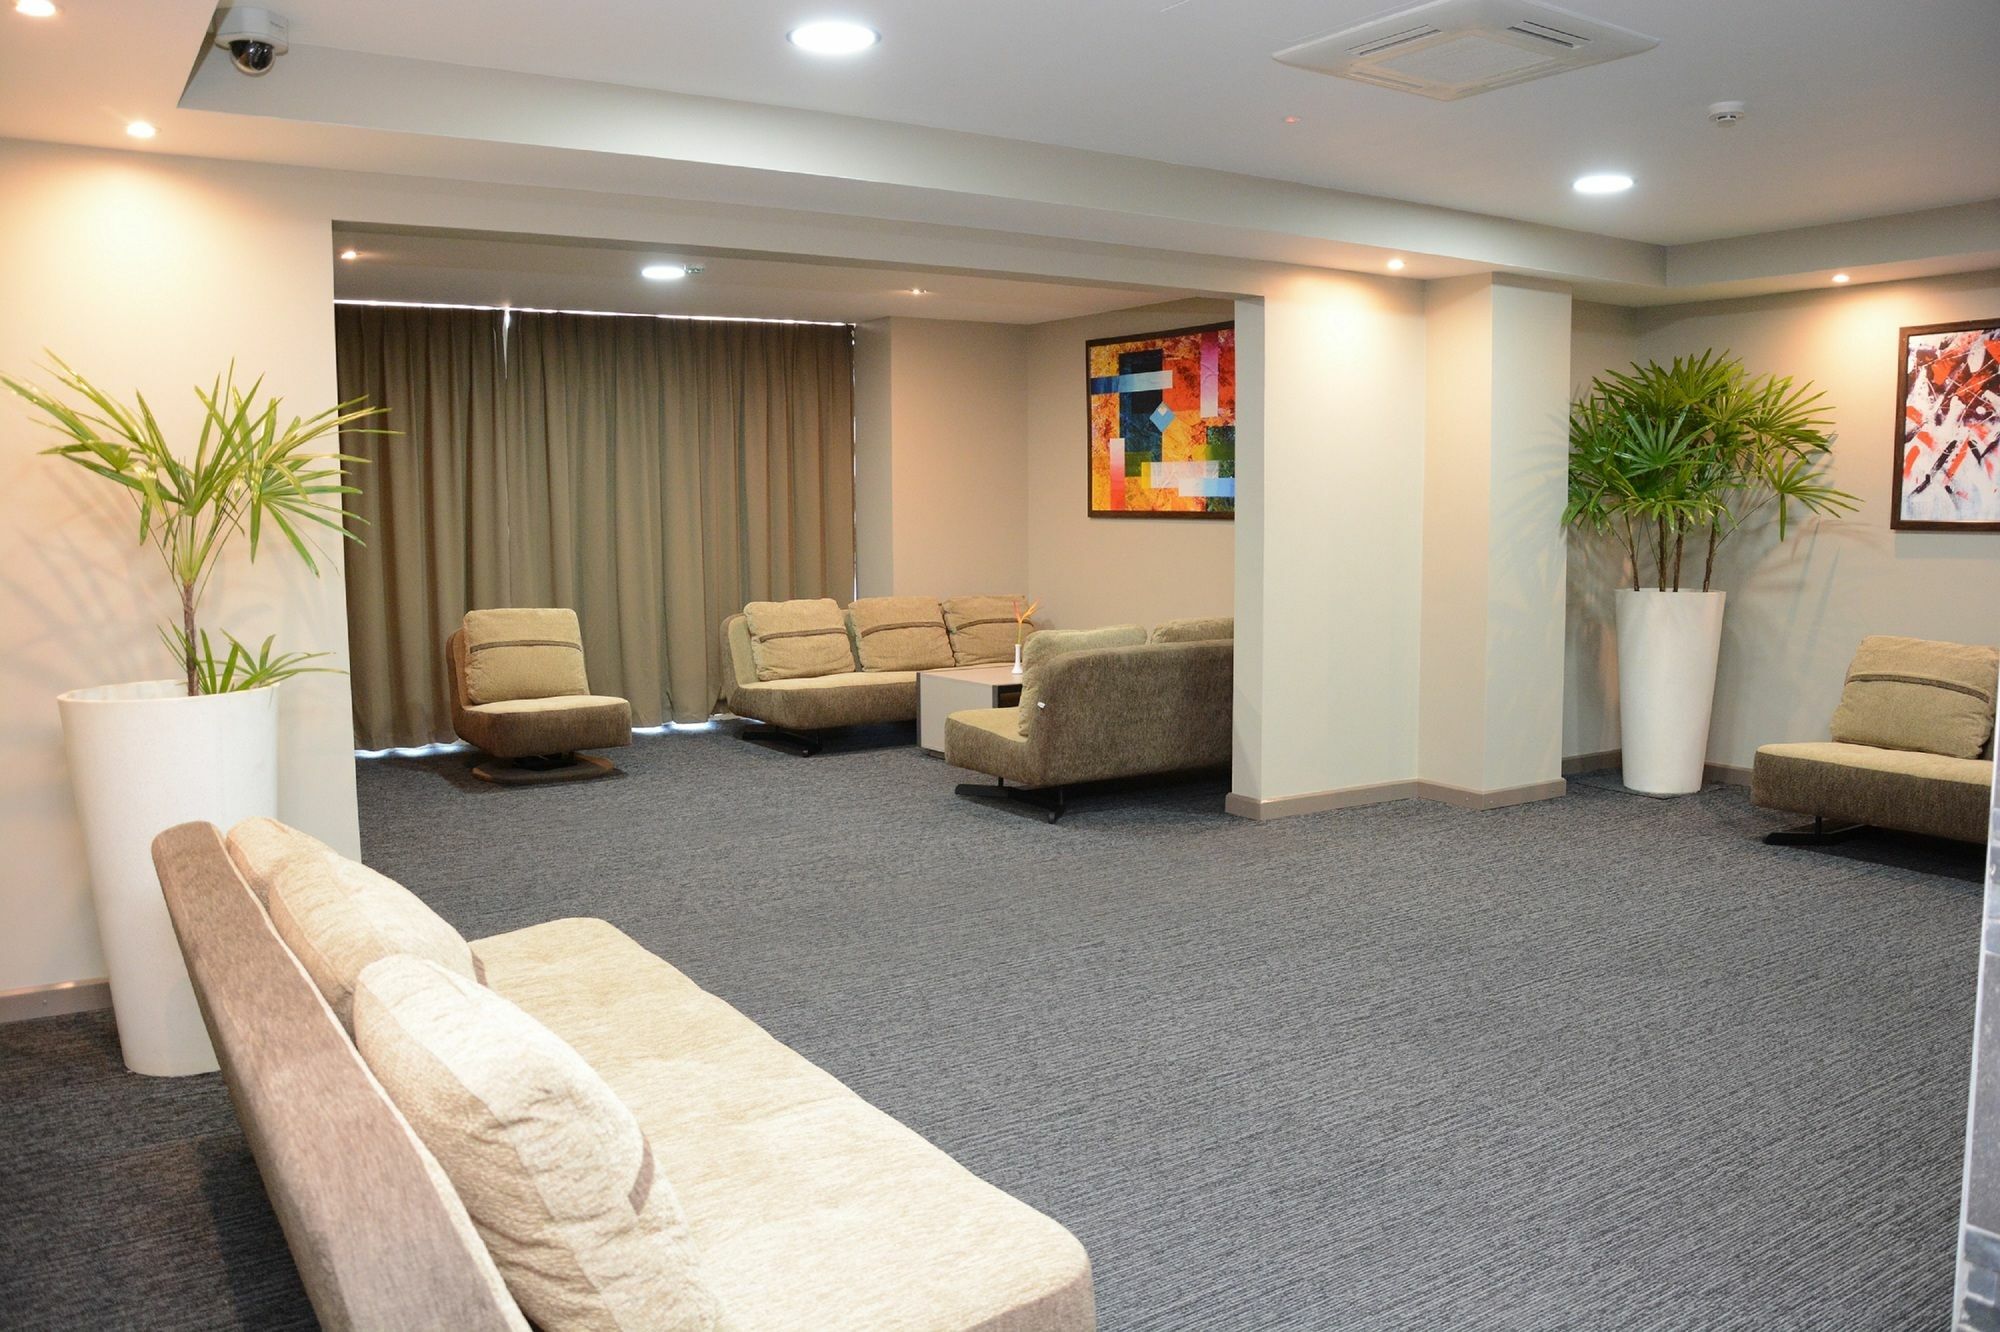 Ratsun Nadi Airport Apartment Hotel Eksteriør bilde